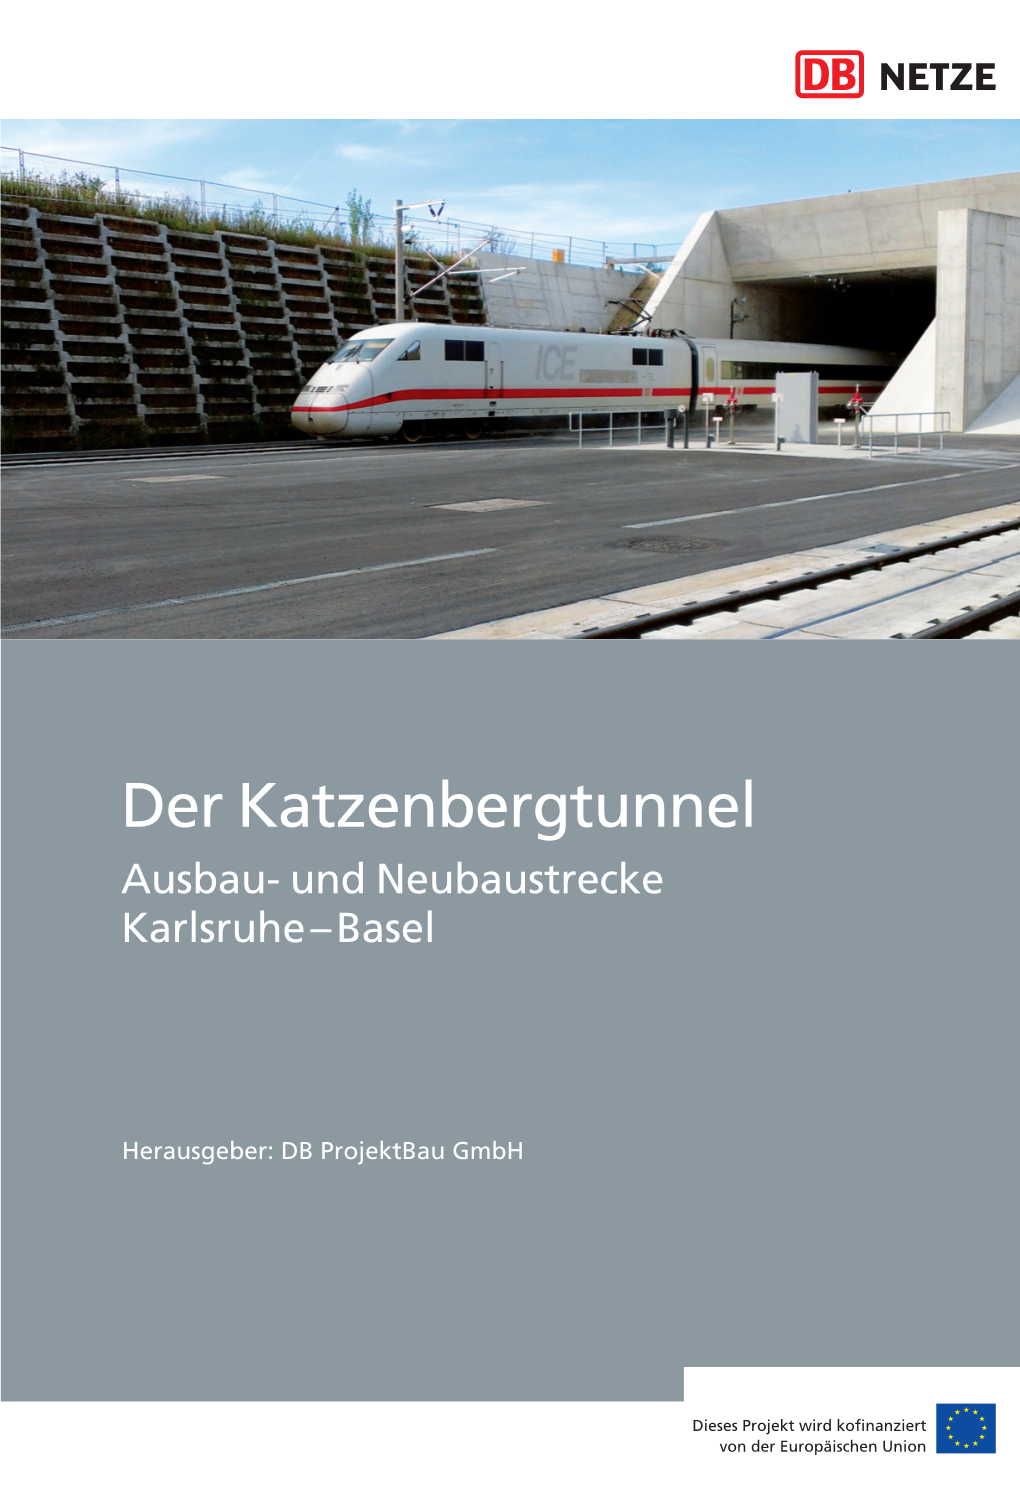 Der Katzenbergtunnel Ausbau- Und Neubaustrecke Karlsruhe – Basel